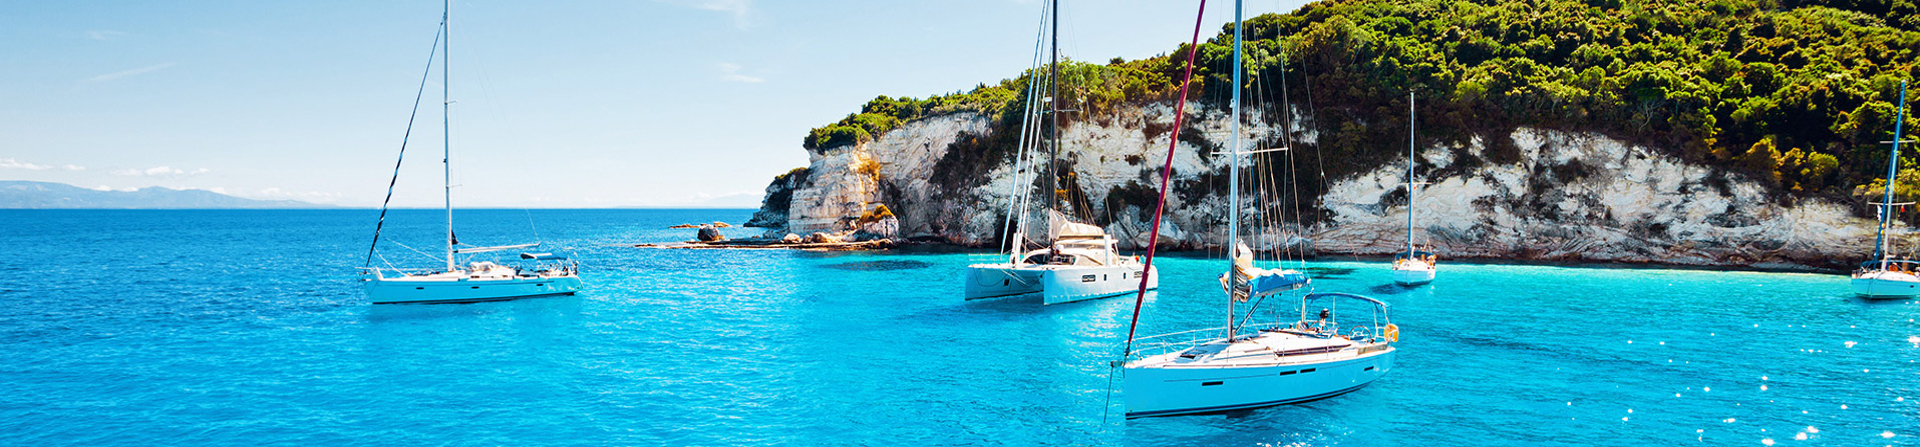 Segelboote chartern in Griechenland